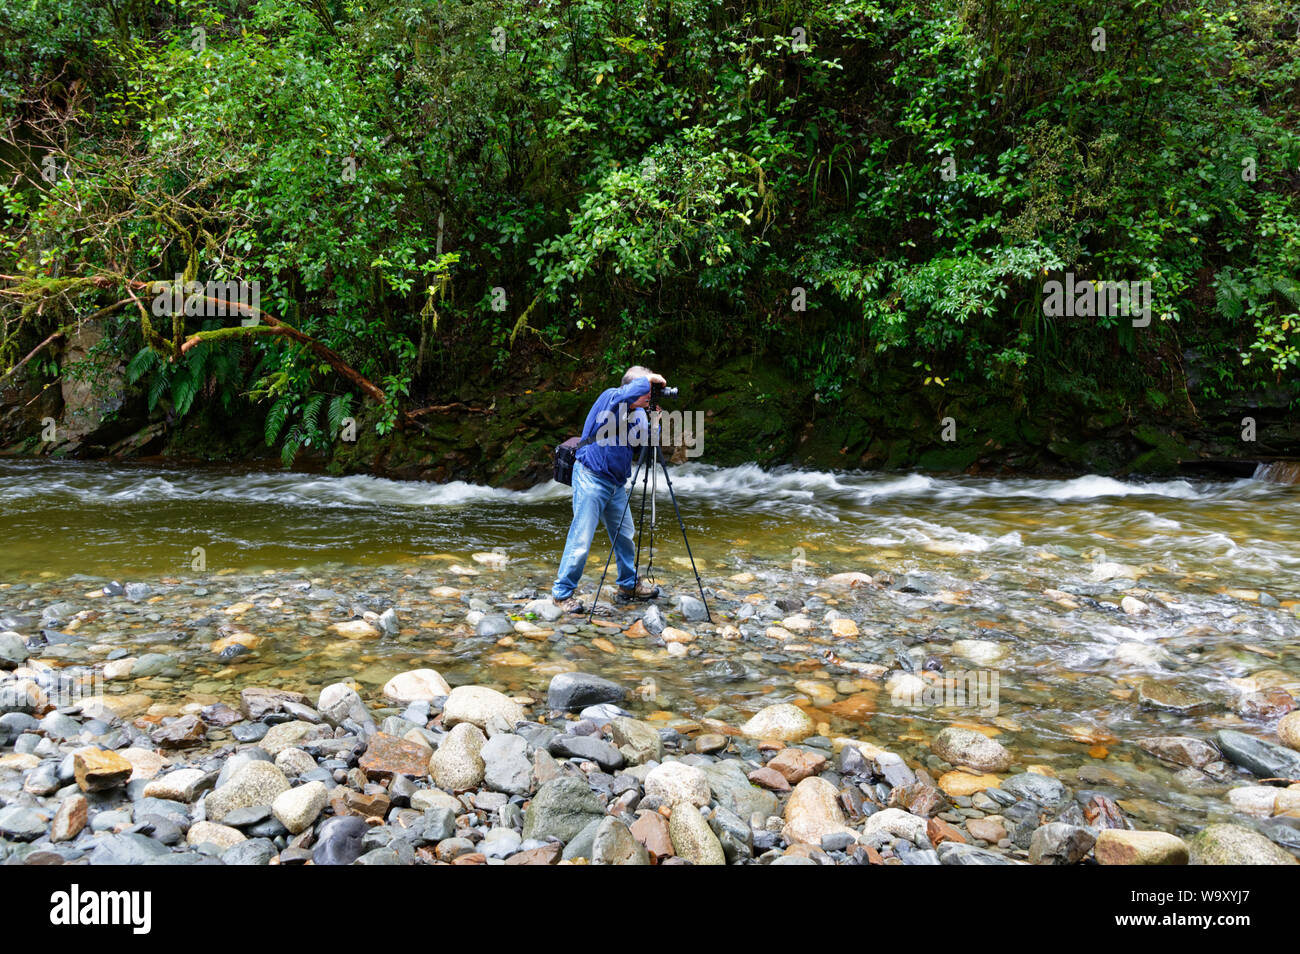 Un fotografo è di scattare una foto con la fotocamera su un treppiede mentre in piedi in acqua in un rocky river letto, c'è verde la macchia nativa dietro hime Foto Stock